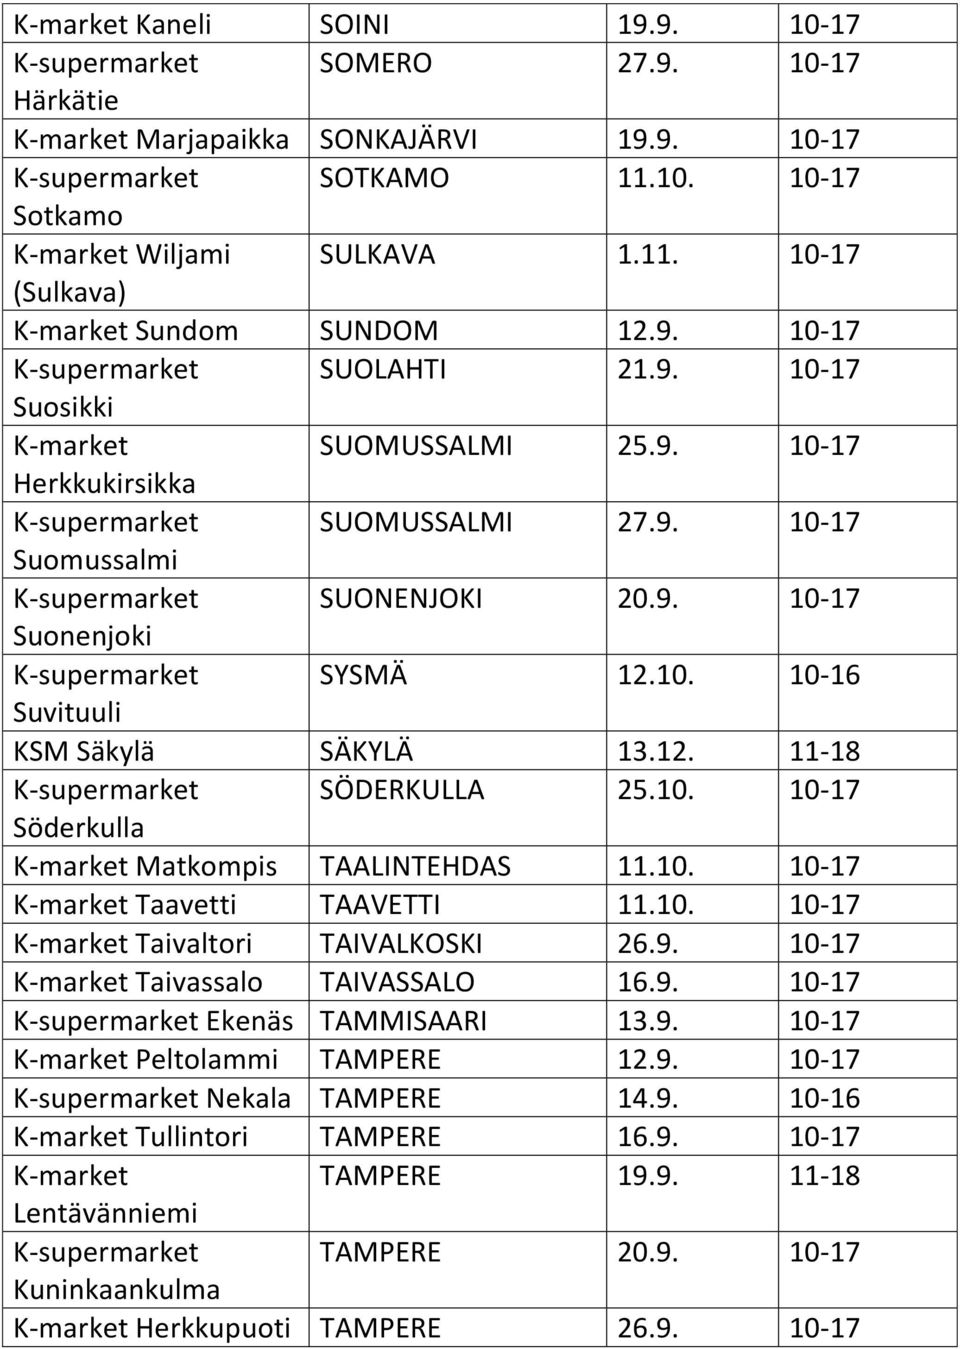 10. 10-16 Suvituuli KSM Säkylä SÄKYLÄ 13.12. 11-18 K-supermarket SÖDERKULLA 25.10. 10-17 Söderkulla K-market Matkompis TAALINTEHDAS 11.10. 10-17 K-market Taavetti TAAVETTI 11.10. 10-17 K-market Taivaltori TAIVALKOSKI 26.